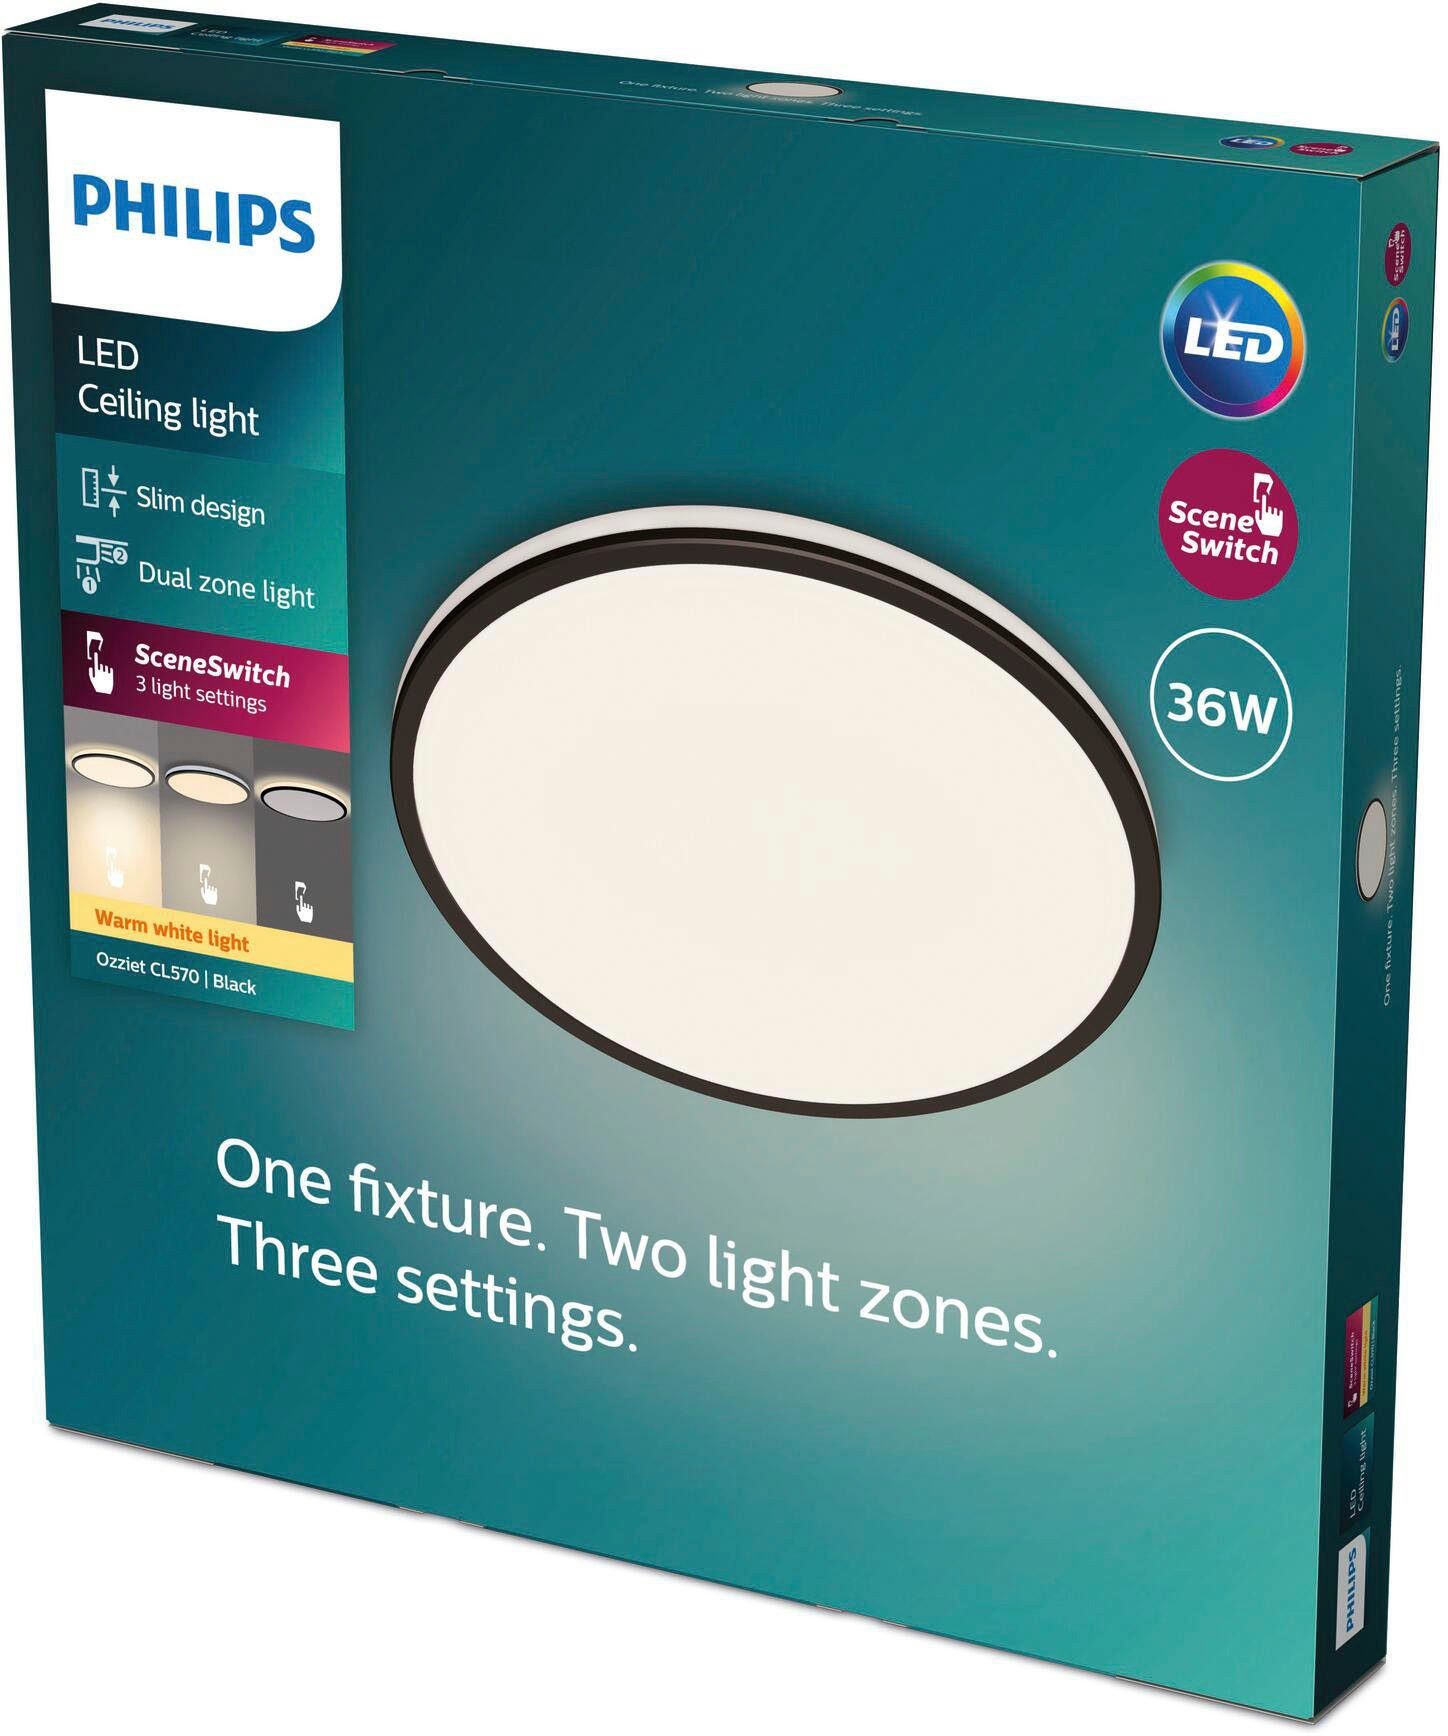 integriert, LED Warmweiß fest LED Philips Dimmfunktion, Deckenleuchte Ozziet,